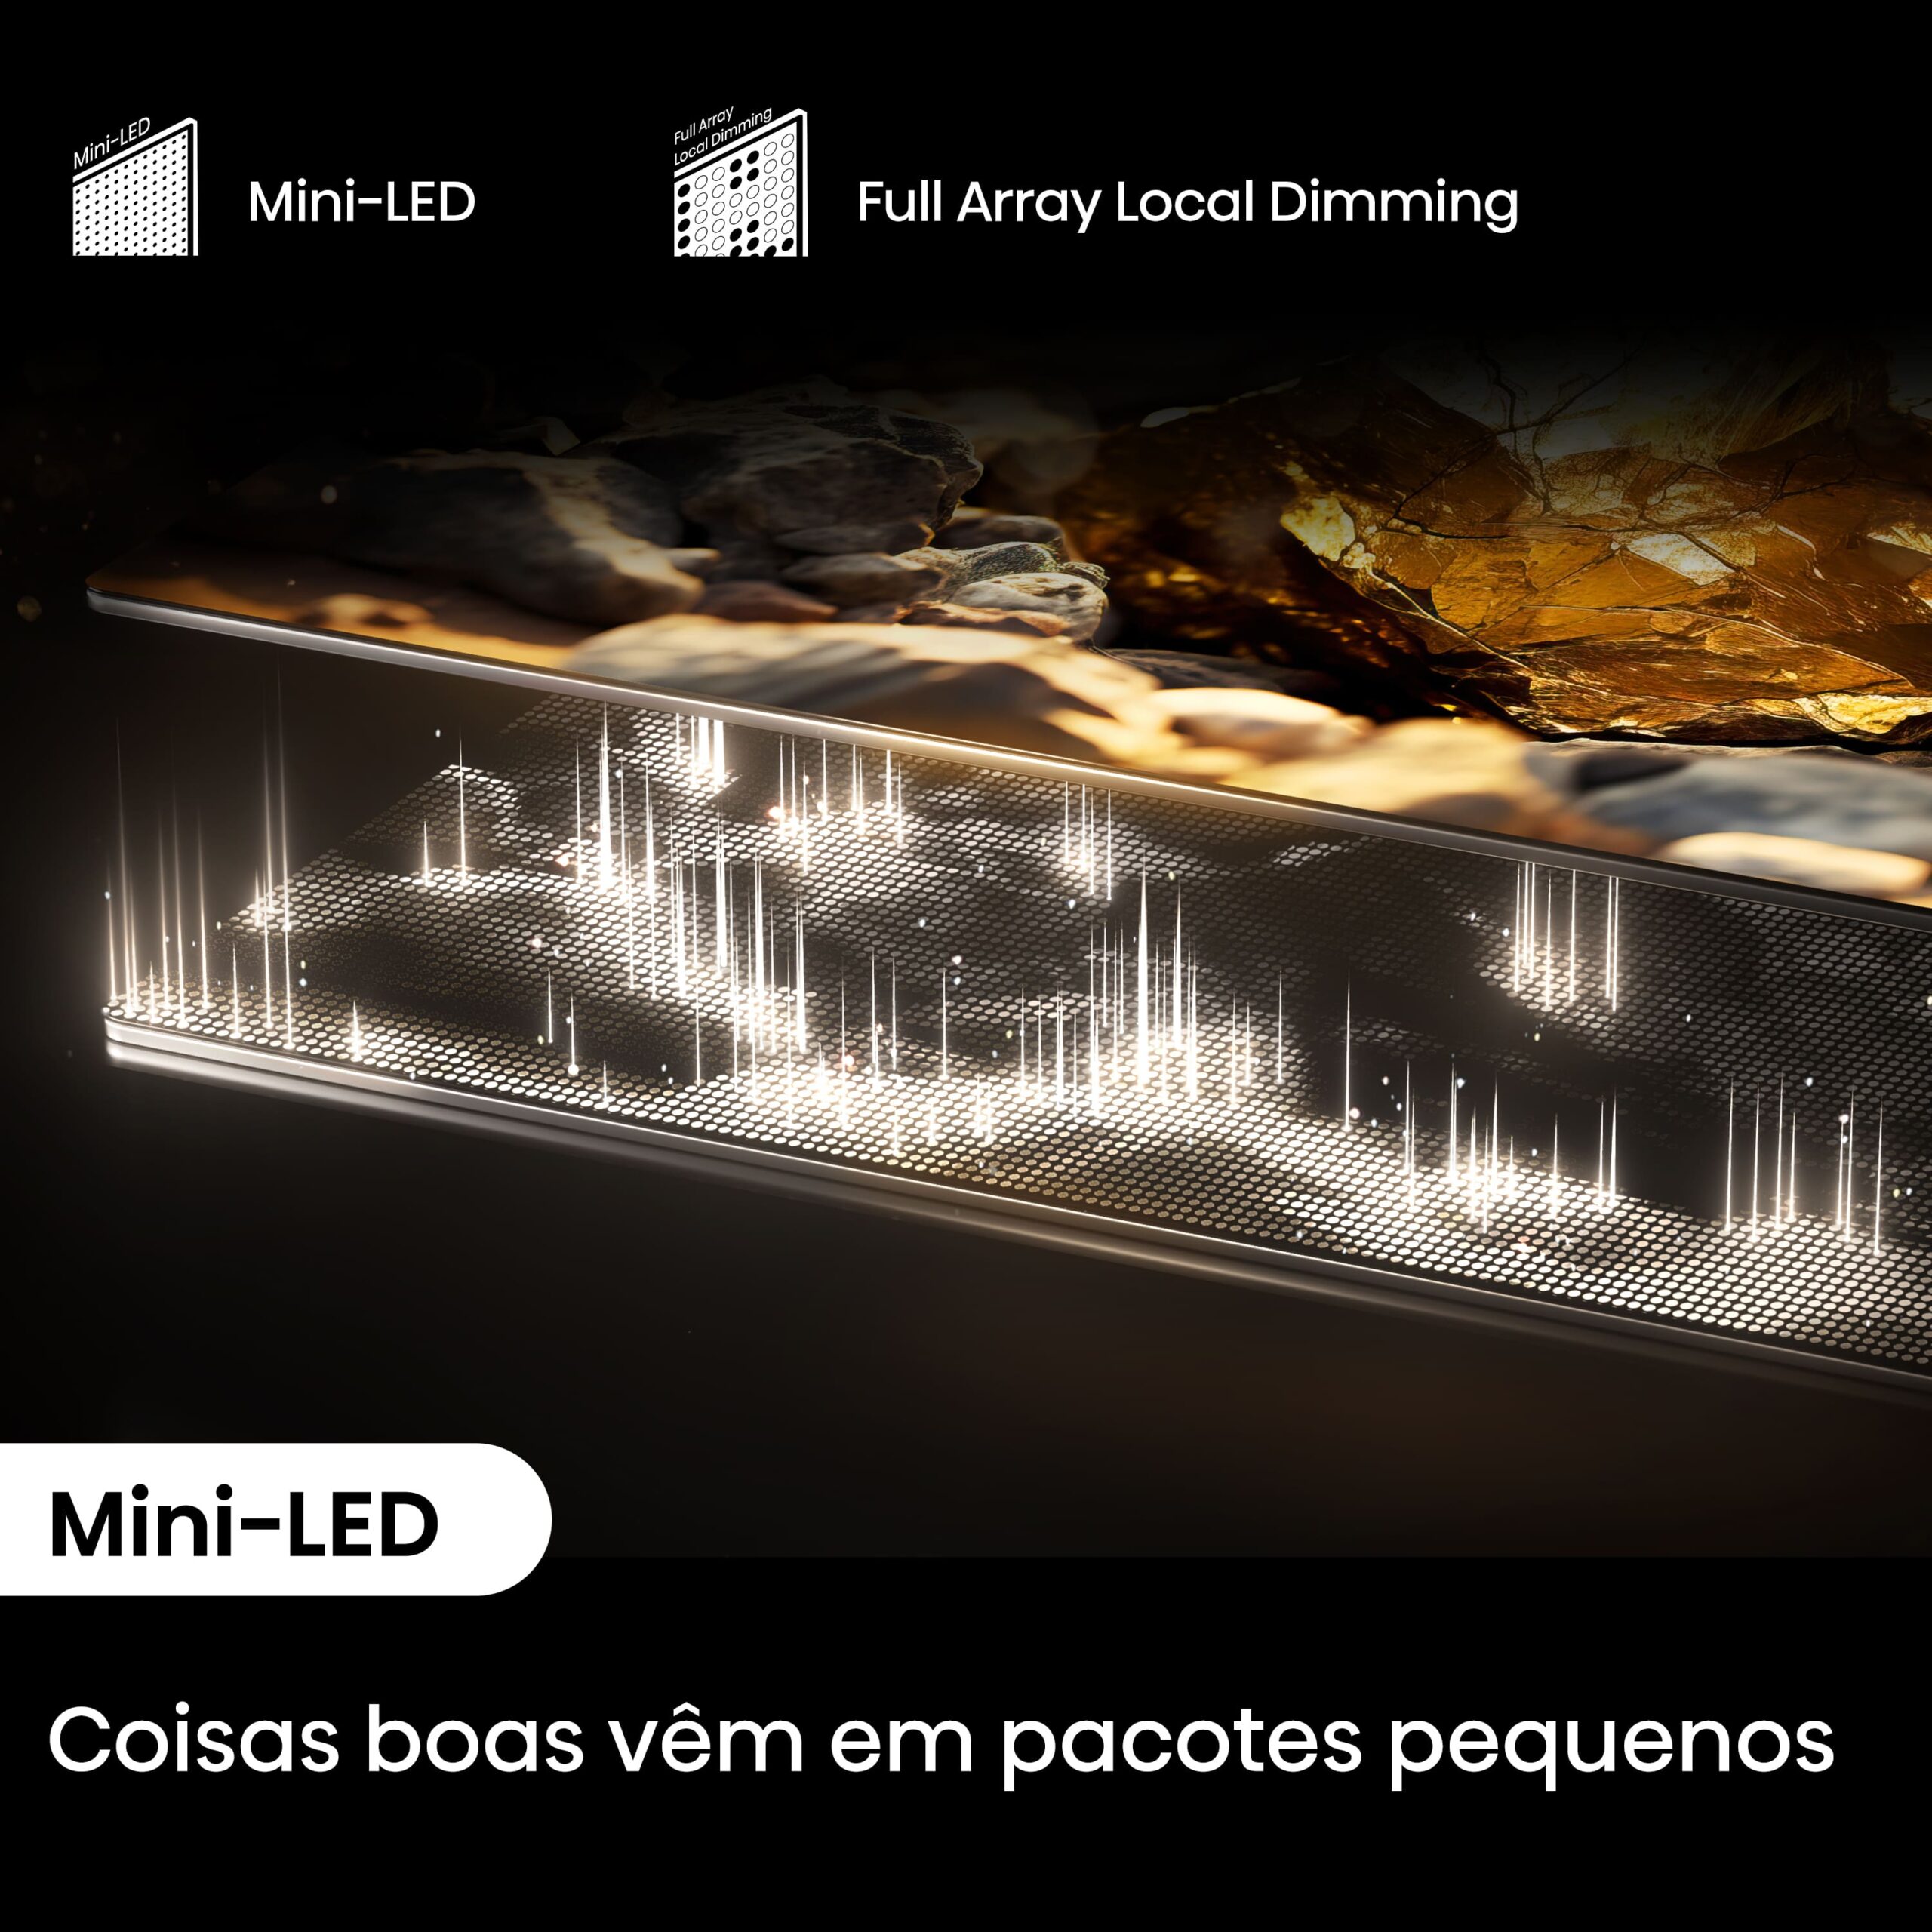 Hisense - Mini-LED TV 75U7NQ, Quantum Dot Colour, Modo Jogo de 144Hz, Full Array Local Dimming